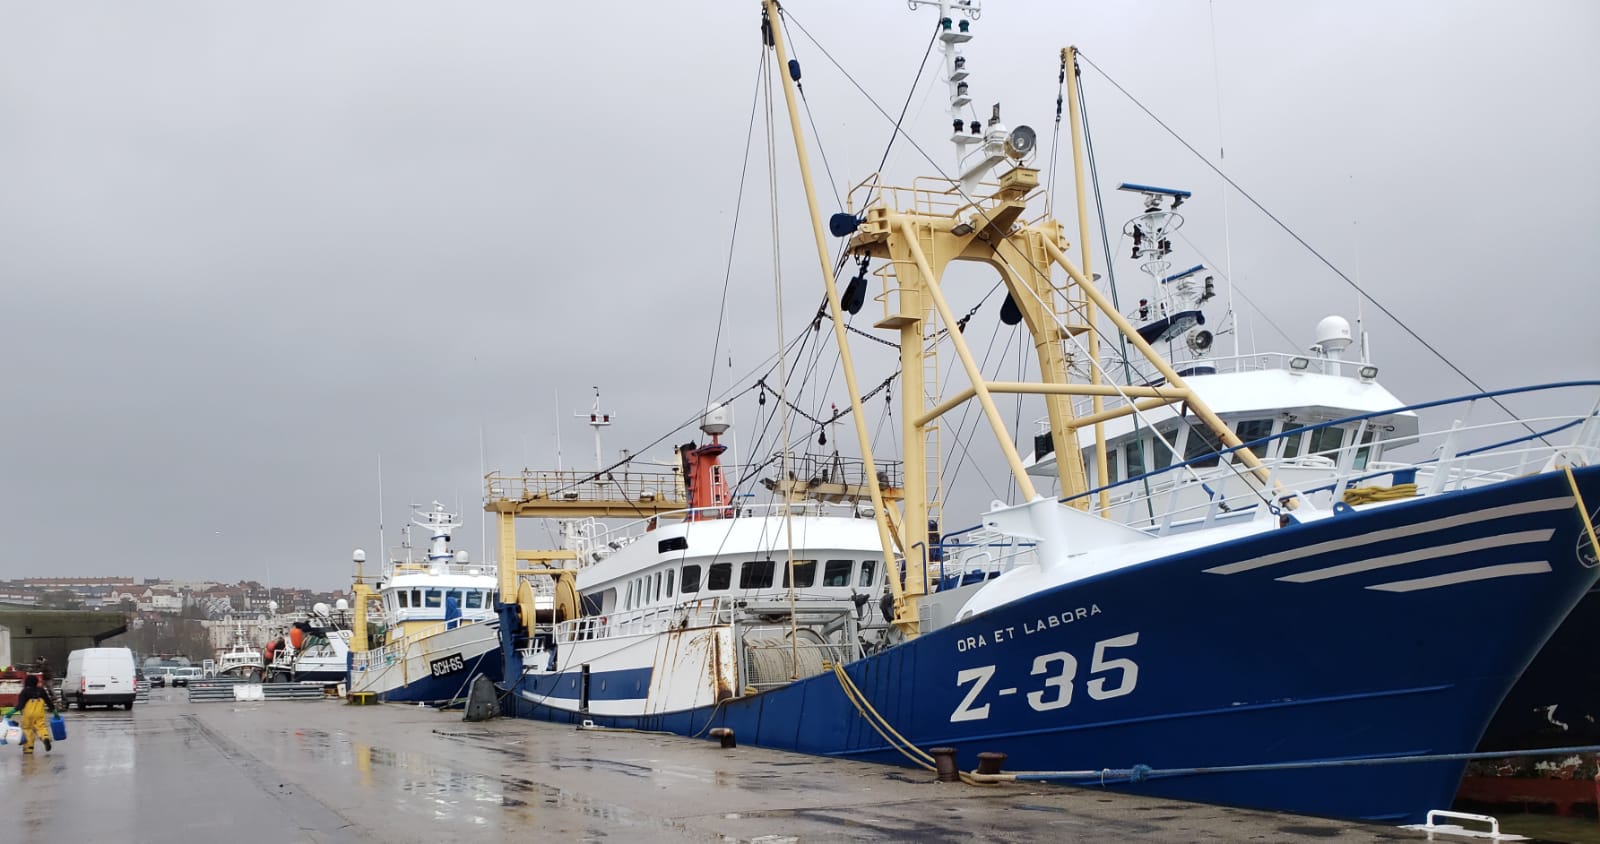 Communiqué de presse – Signature annoncée de l’accord sur la senne danoise dans la Manche : pêcheurs artisans et ONGs dénoncent un accord illégitime visant à entériner le pillage de la Manche par l’industrie néerlandaise